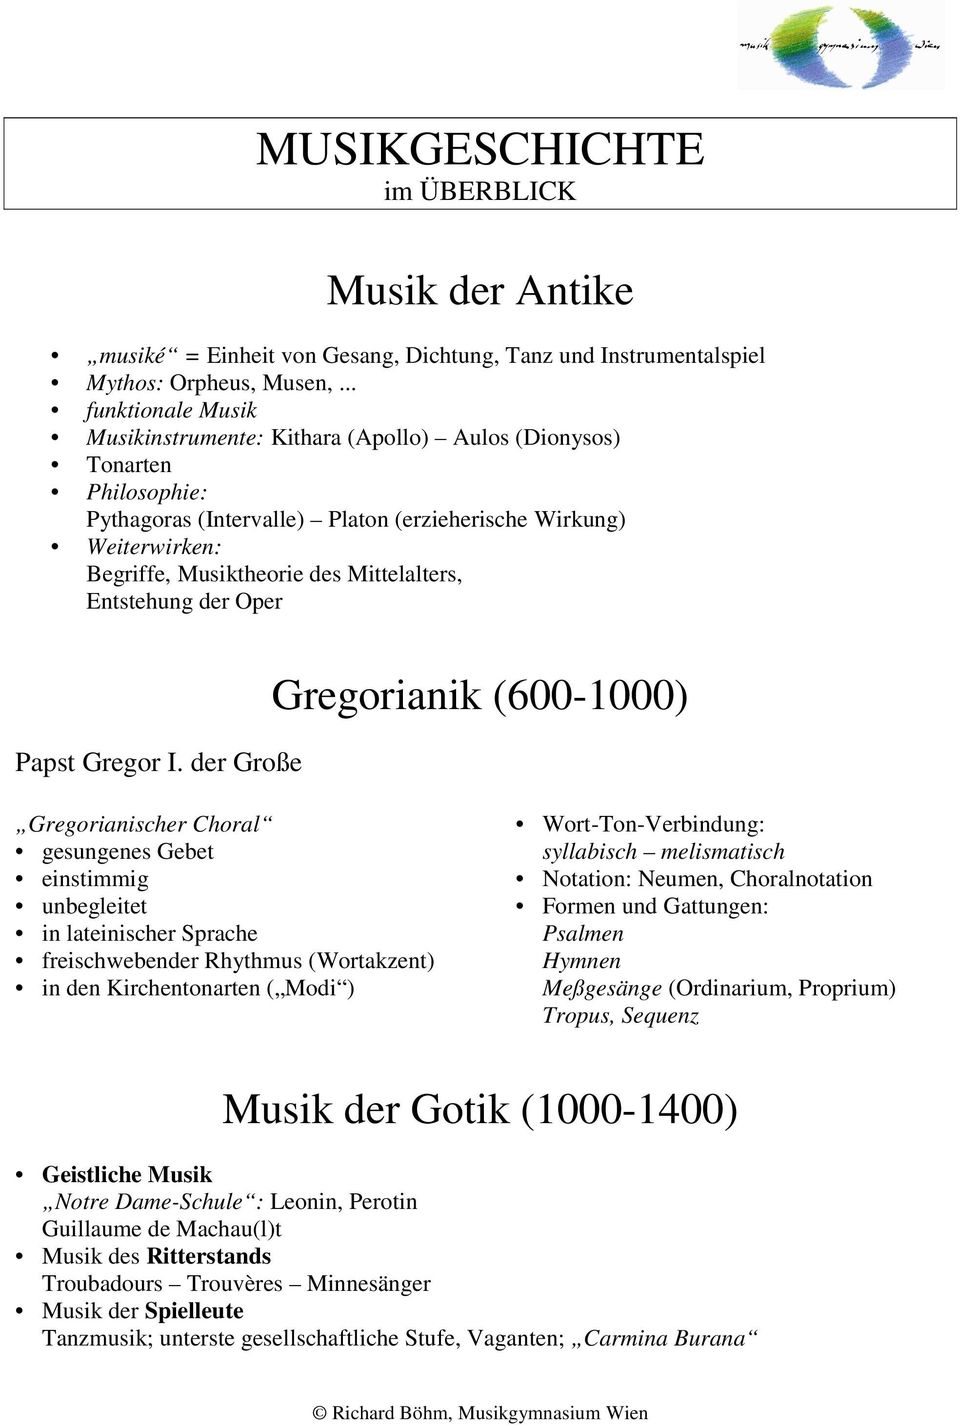 Mittelalters, Entstehung der Oper Papst Gregor I.